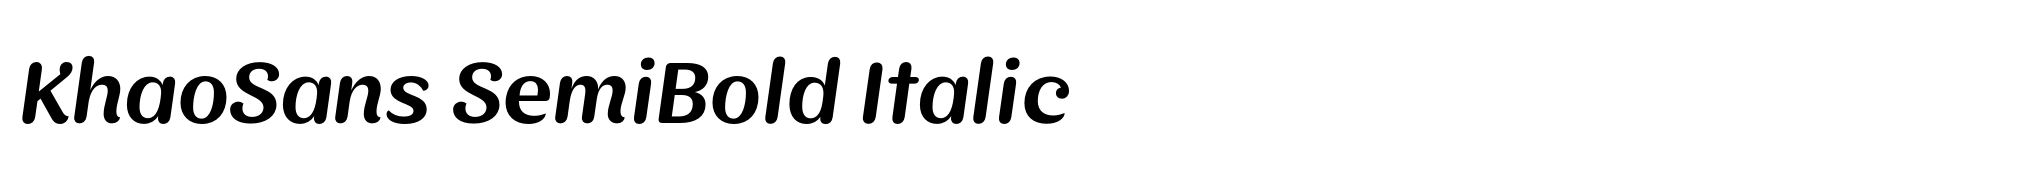 KhaoSans SemiBold Italic image